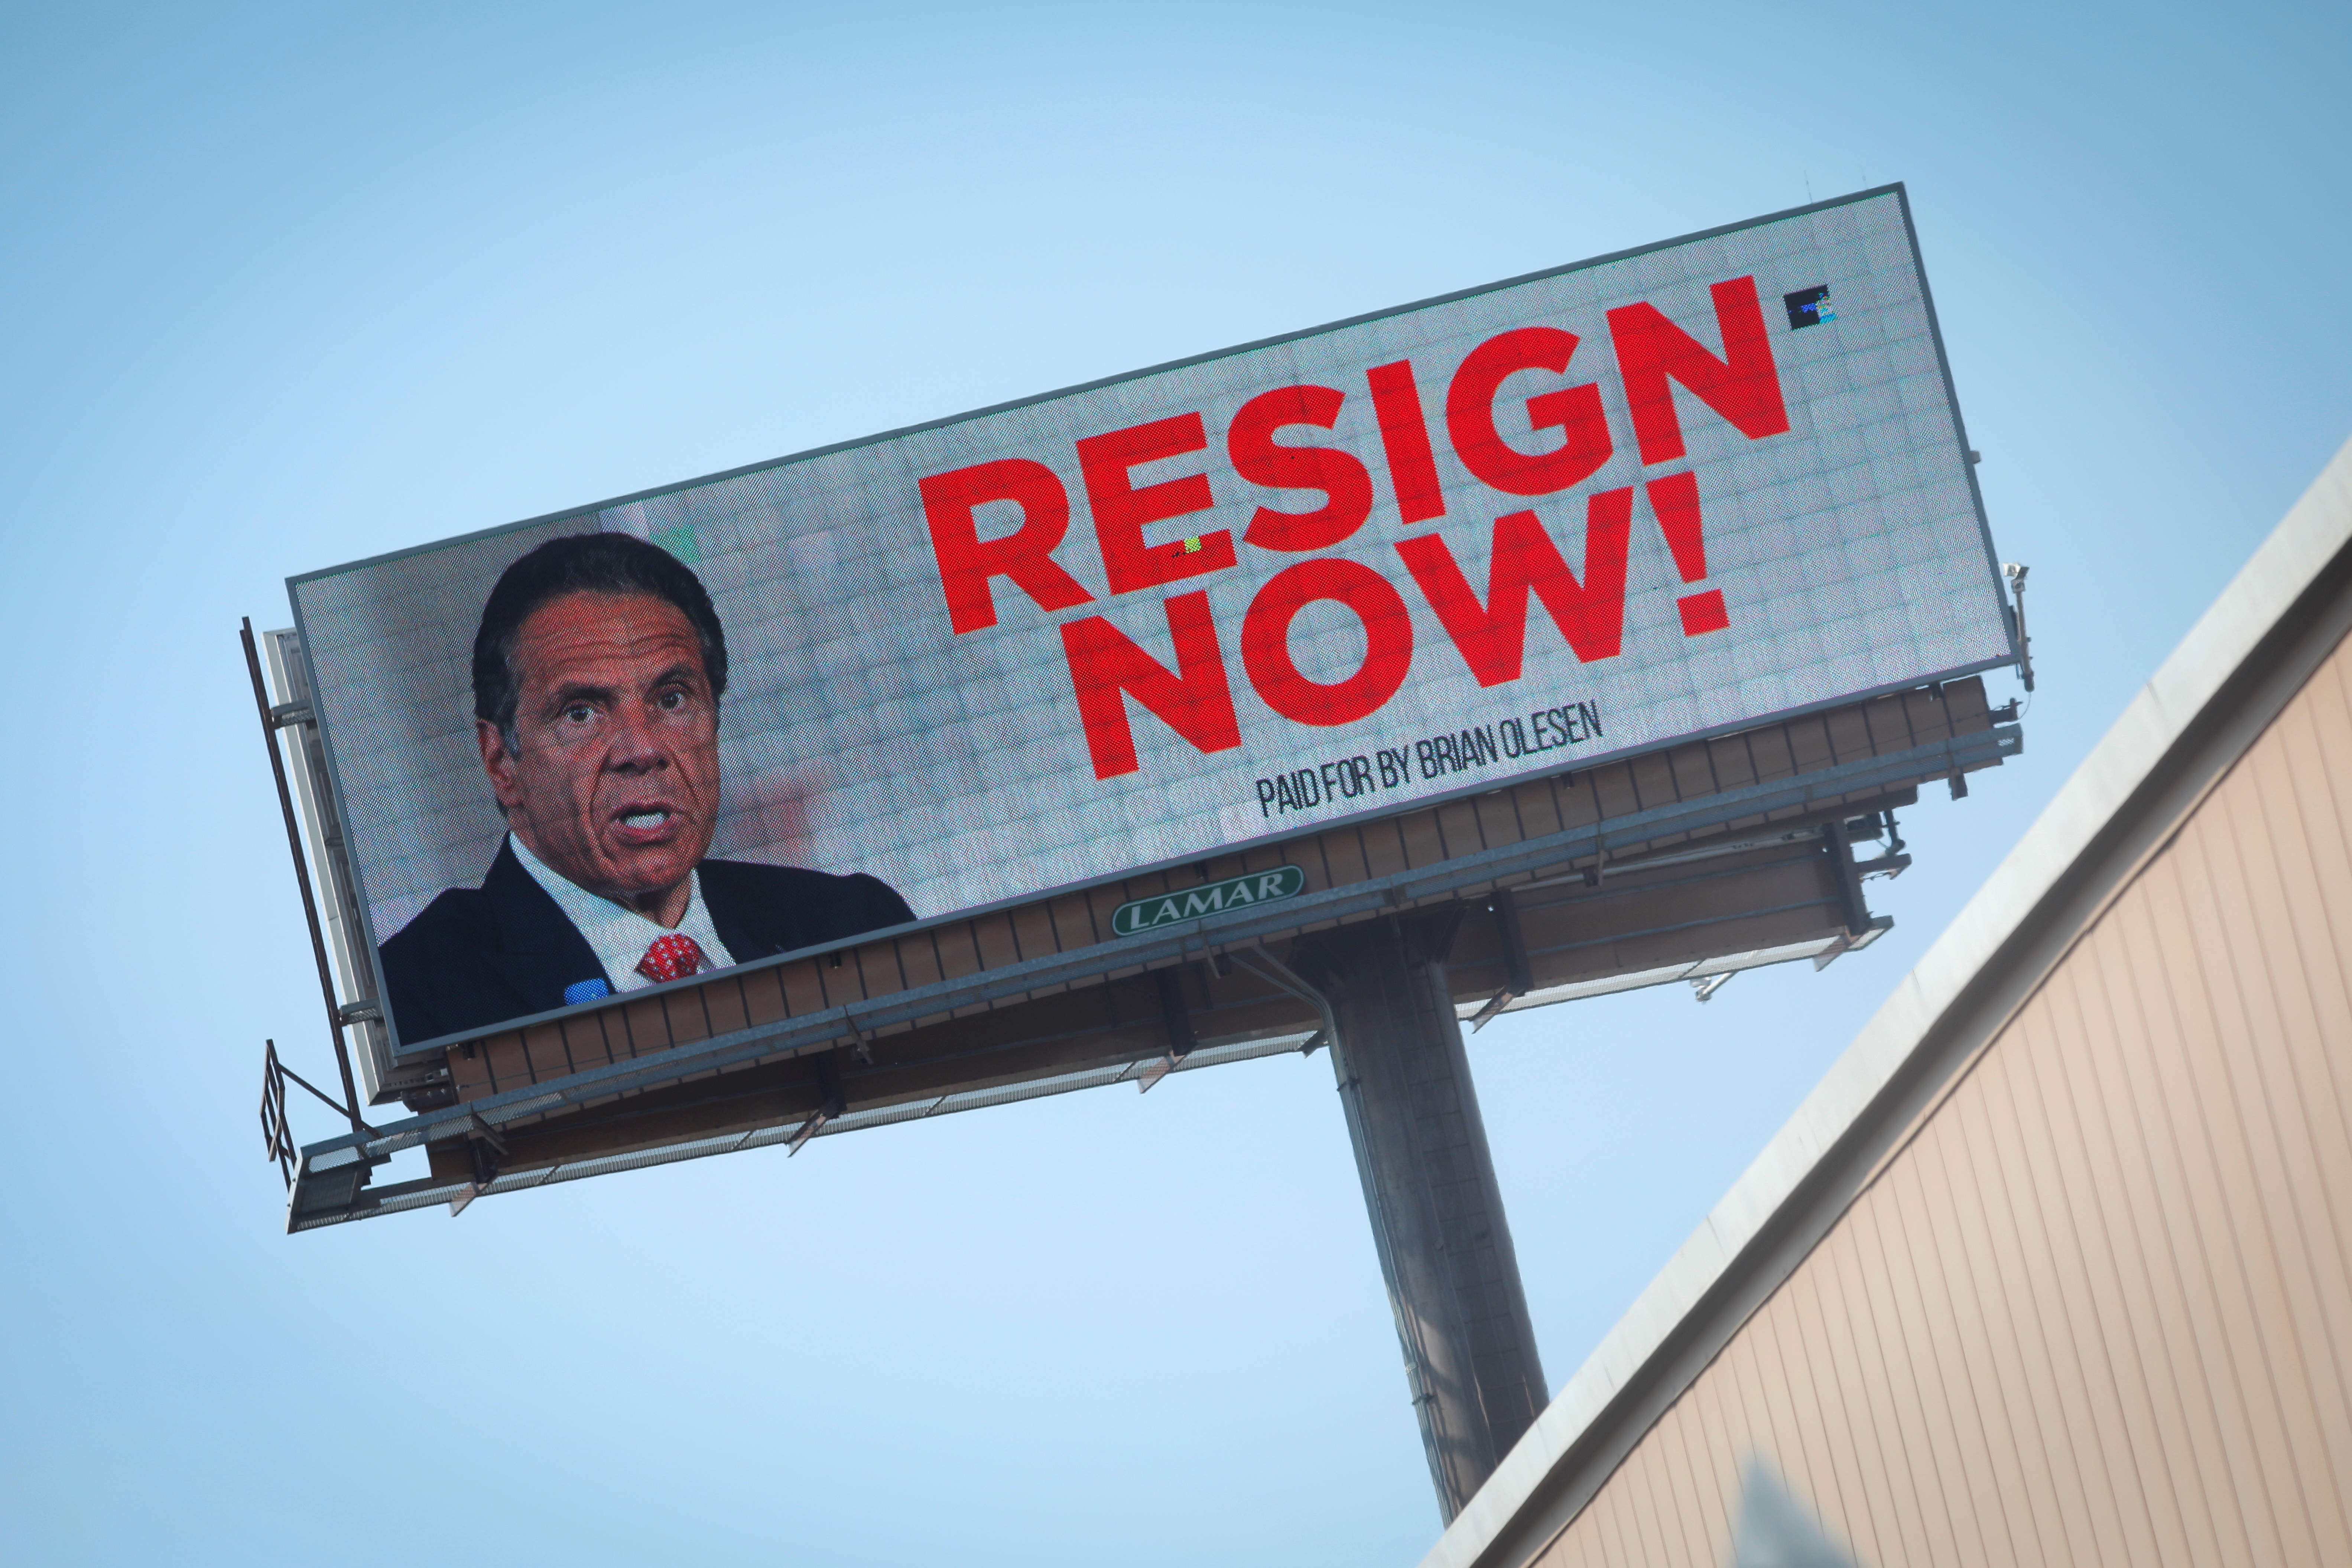 Un cartel publicitario exige la renuncia de Cuomo en Albany, Nueva York (Reuters)